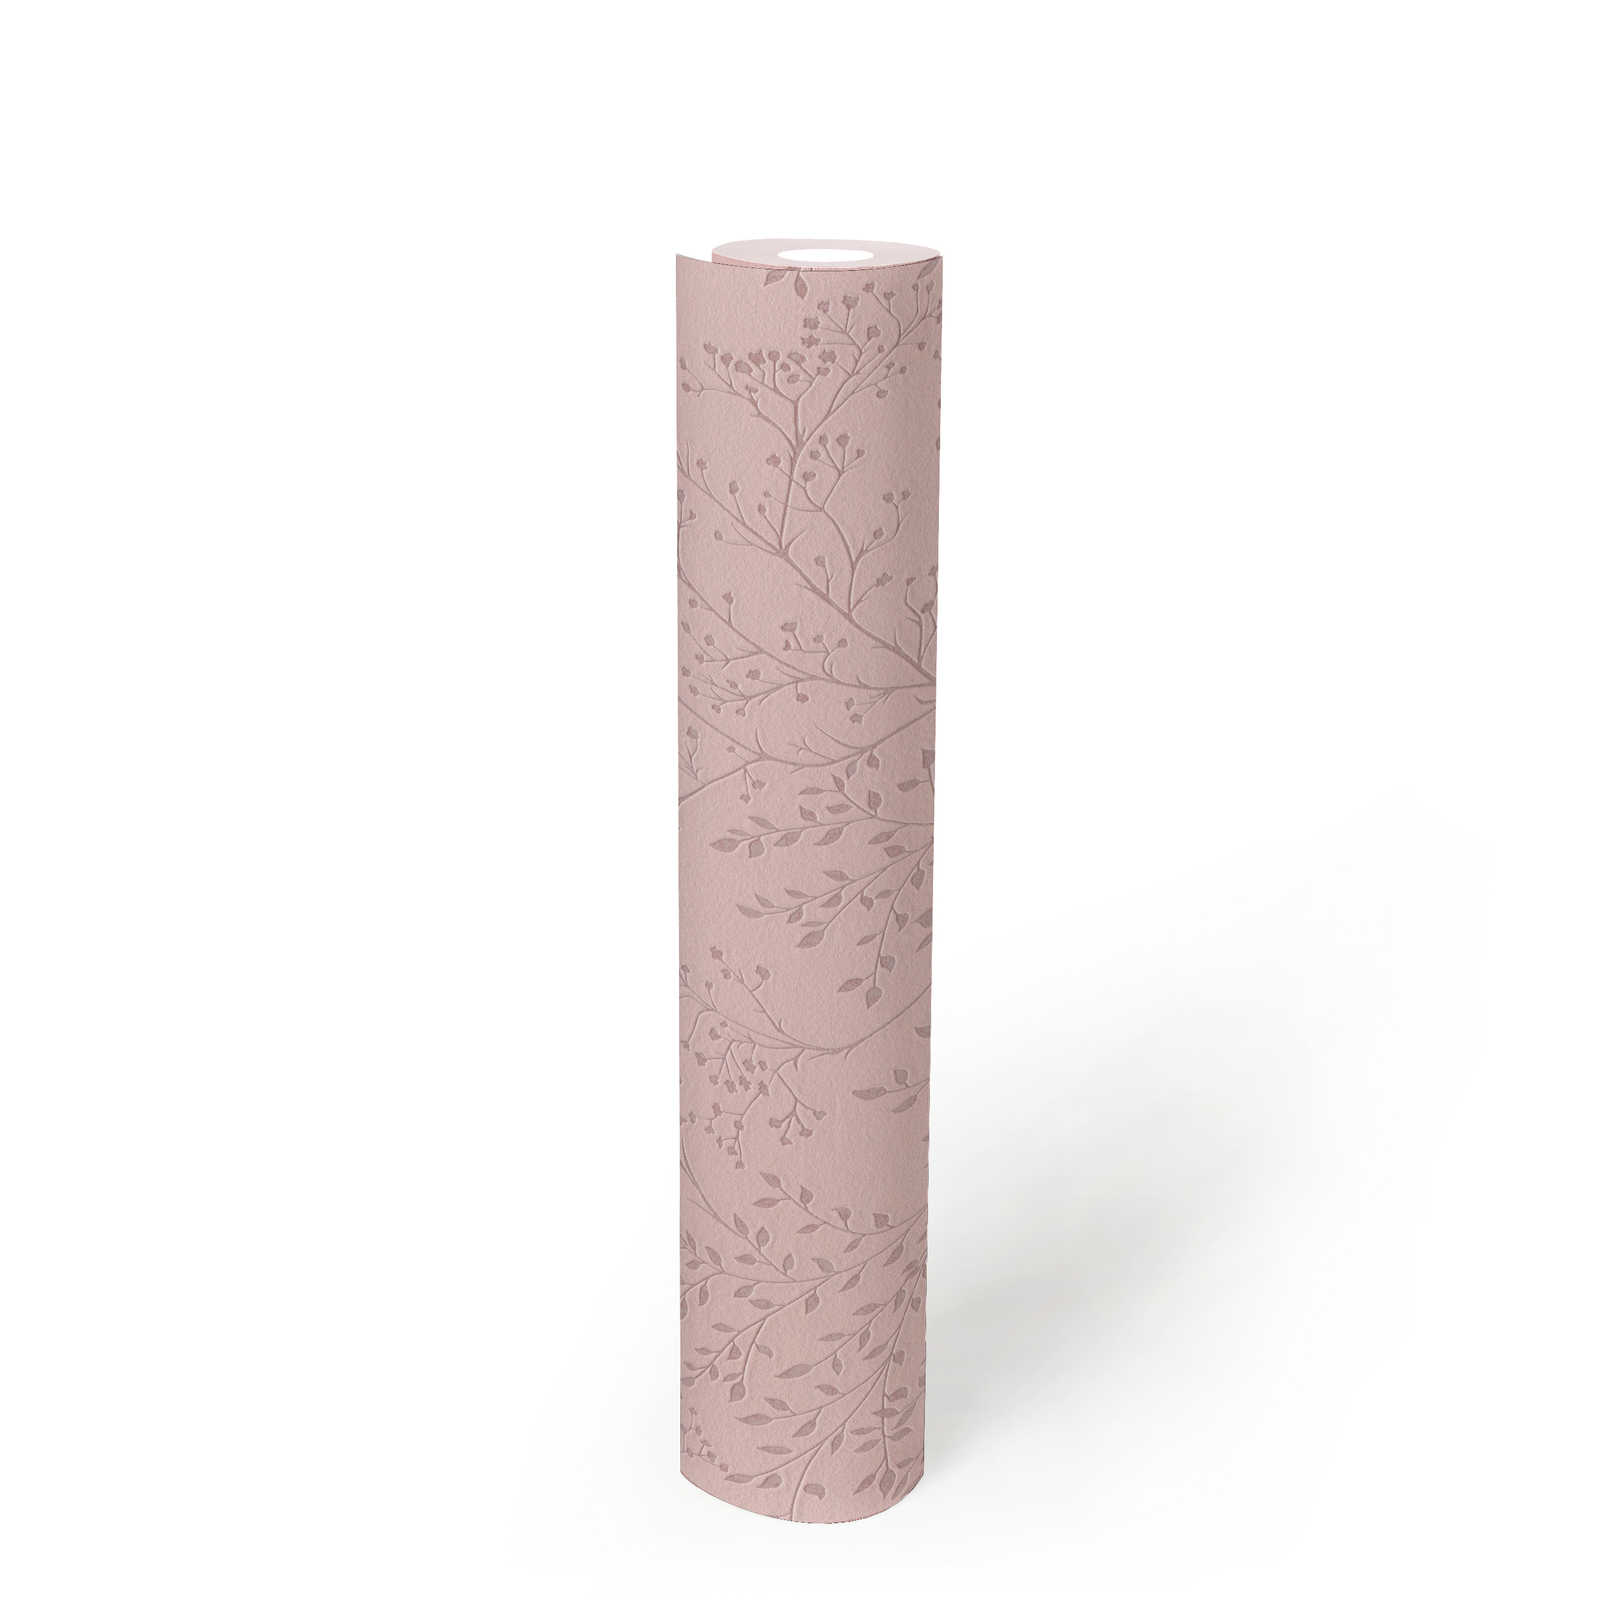             Einfarbige Tapete Rosa mit Blätter Muster, Glanz & Struktureffekt
        